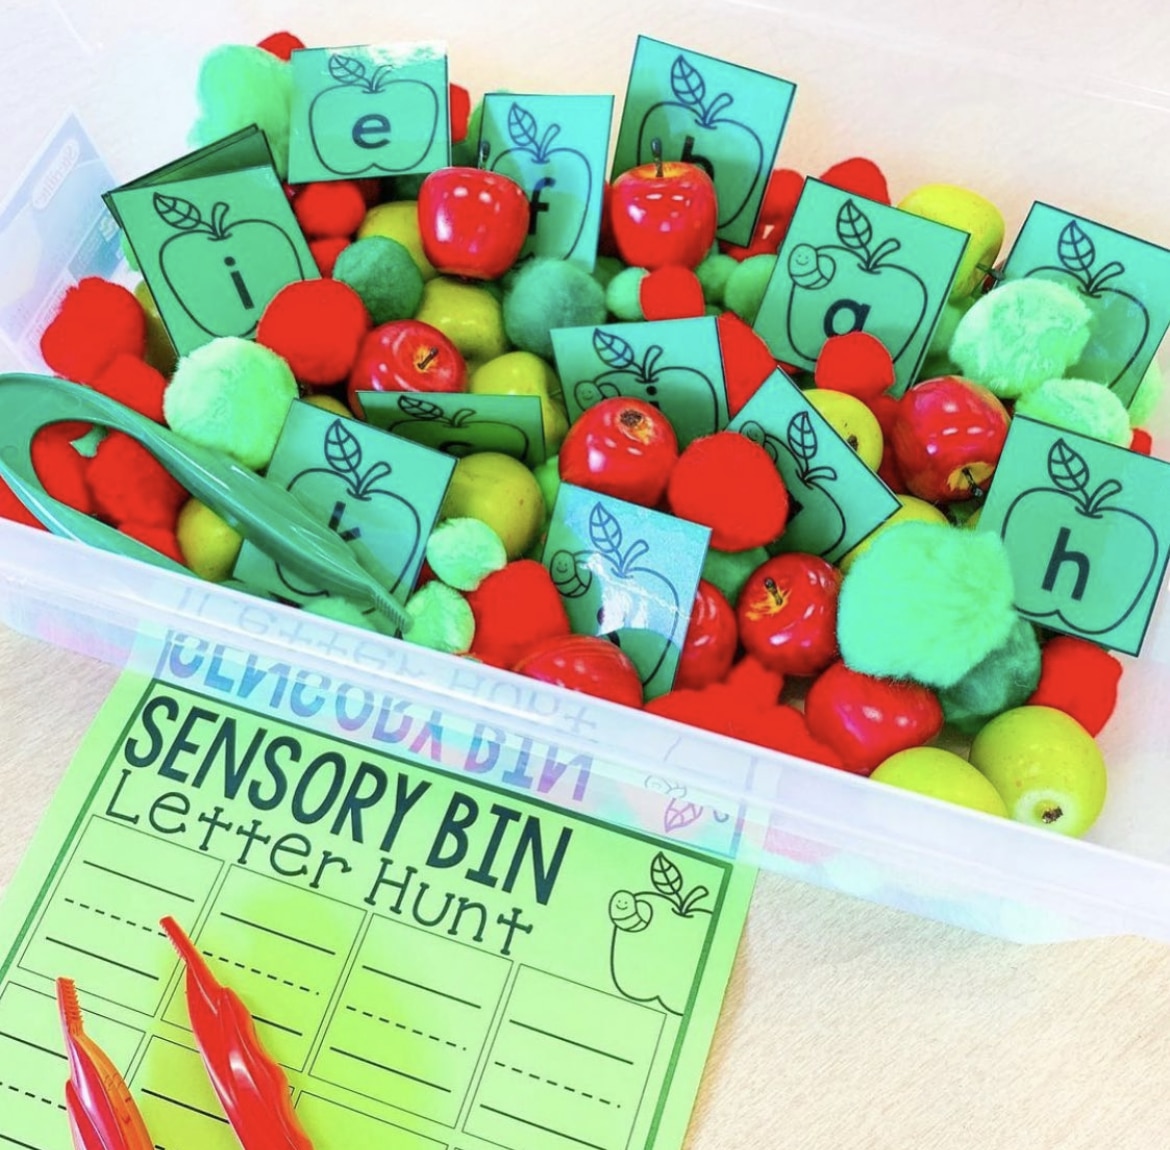 Fine Motor Activities for Kindergarten - Sensory Bin